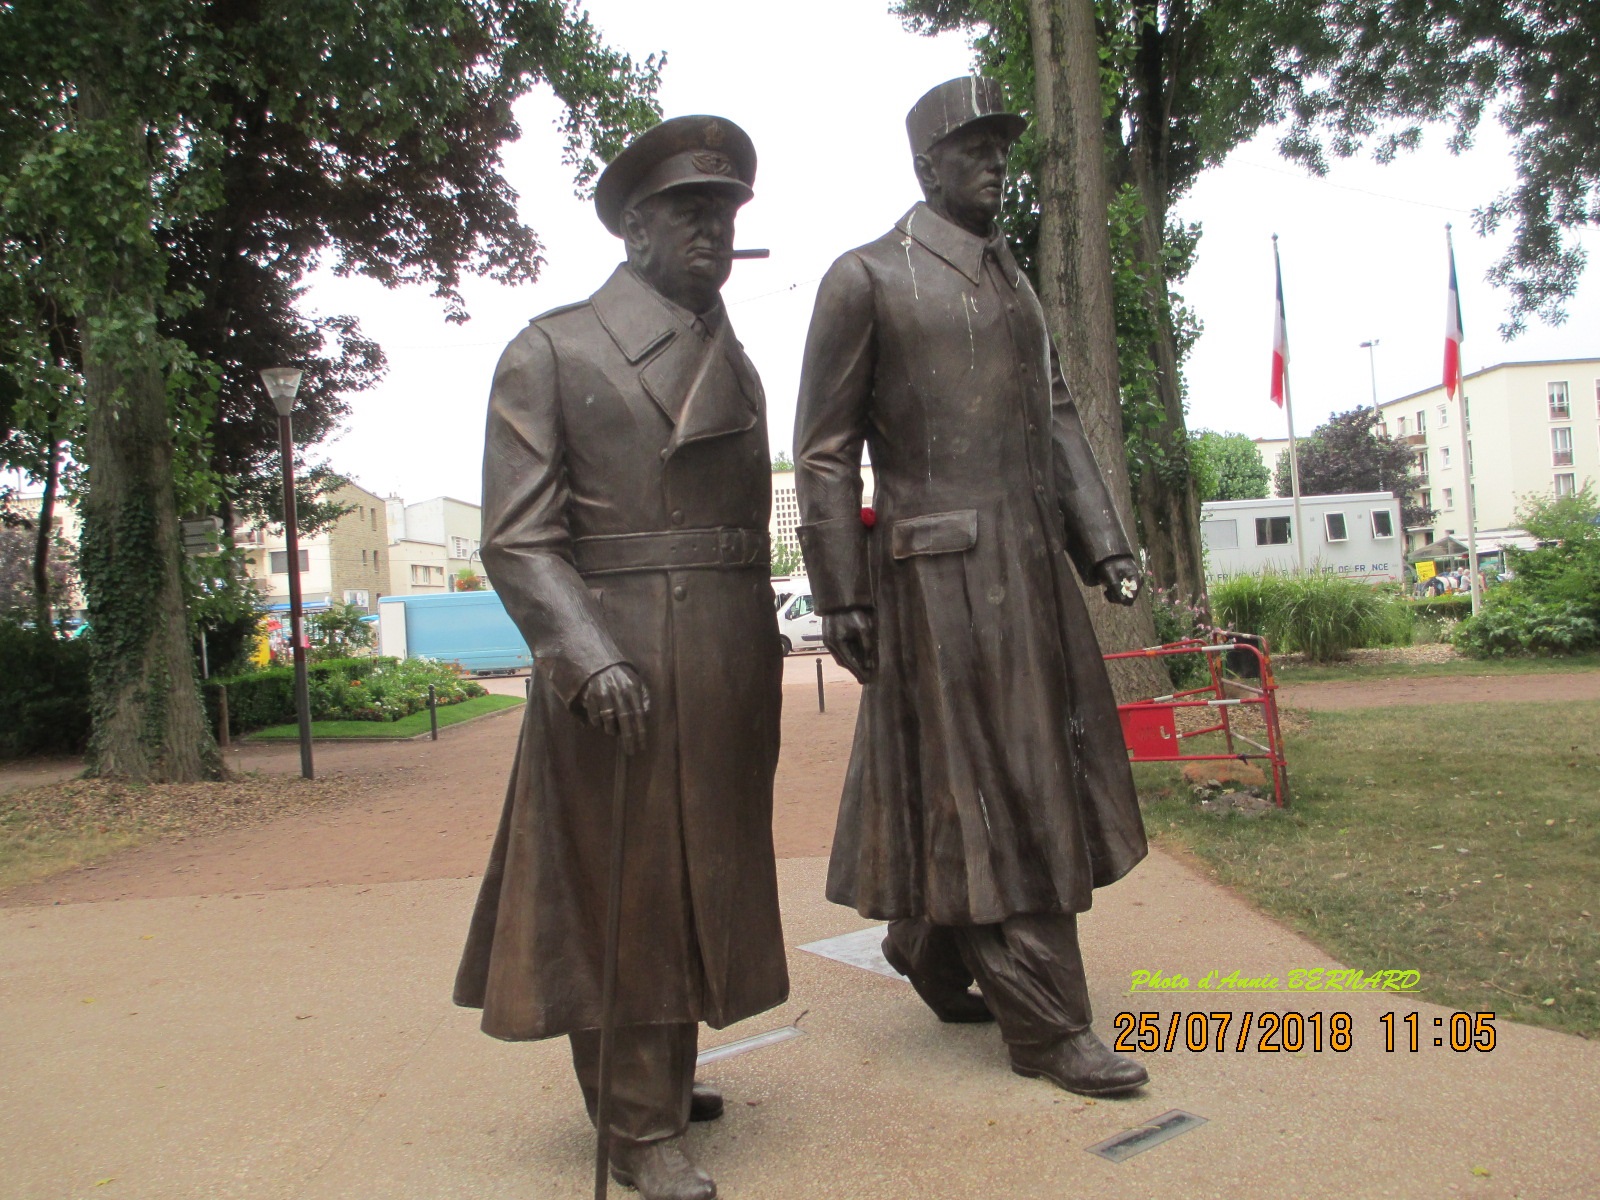 Messieurs De Gaulle et Churchill dans le parc